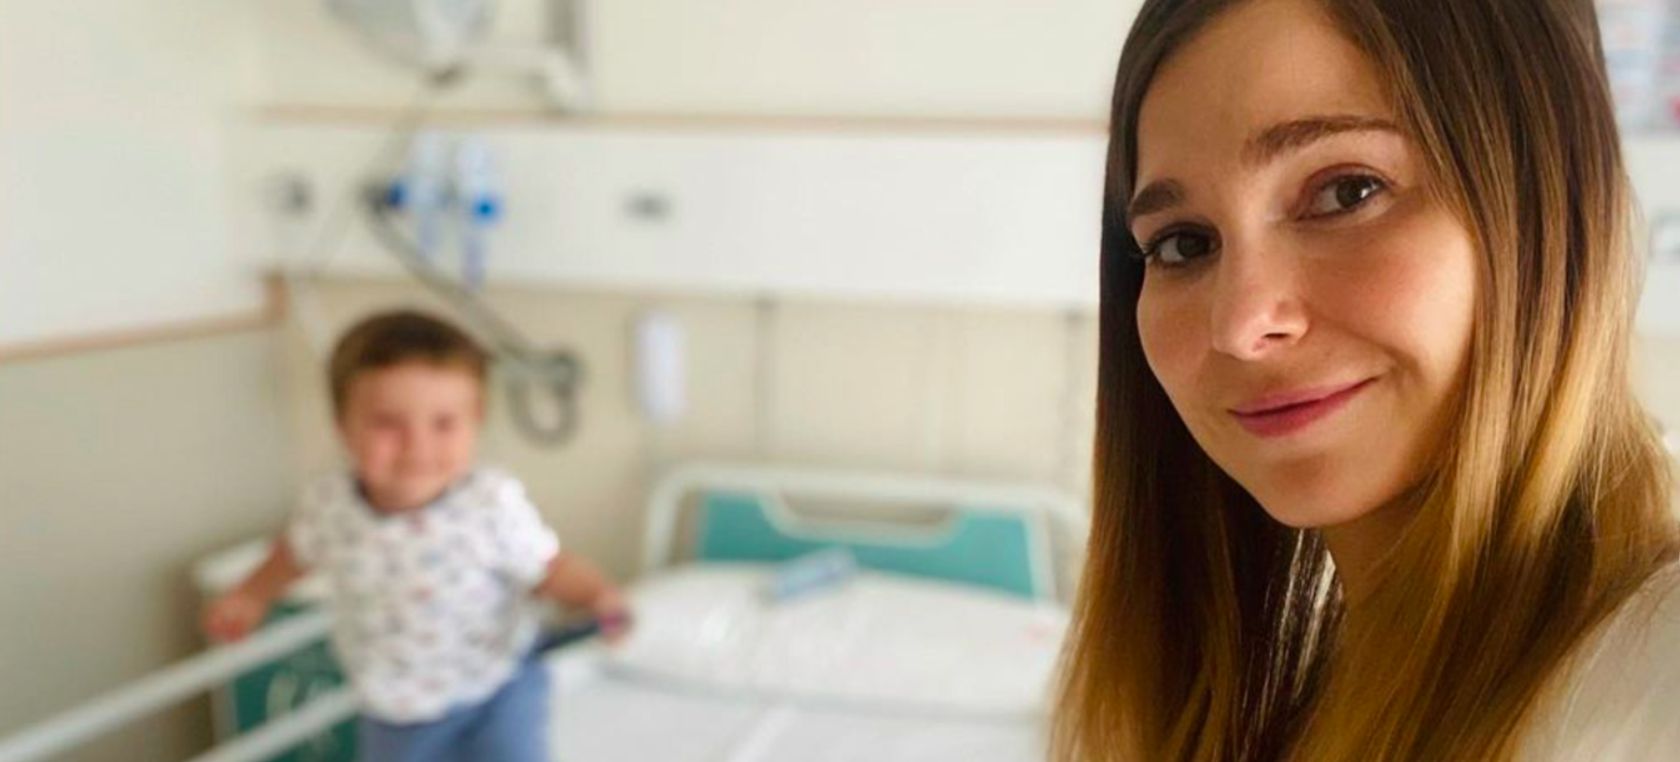 Natalia Sánchez y su hijo Neo, ingresados: “Qué lentas pasan las horas en los hospitales...”